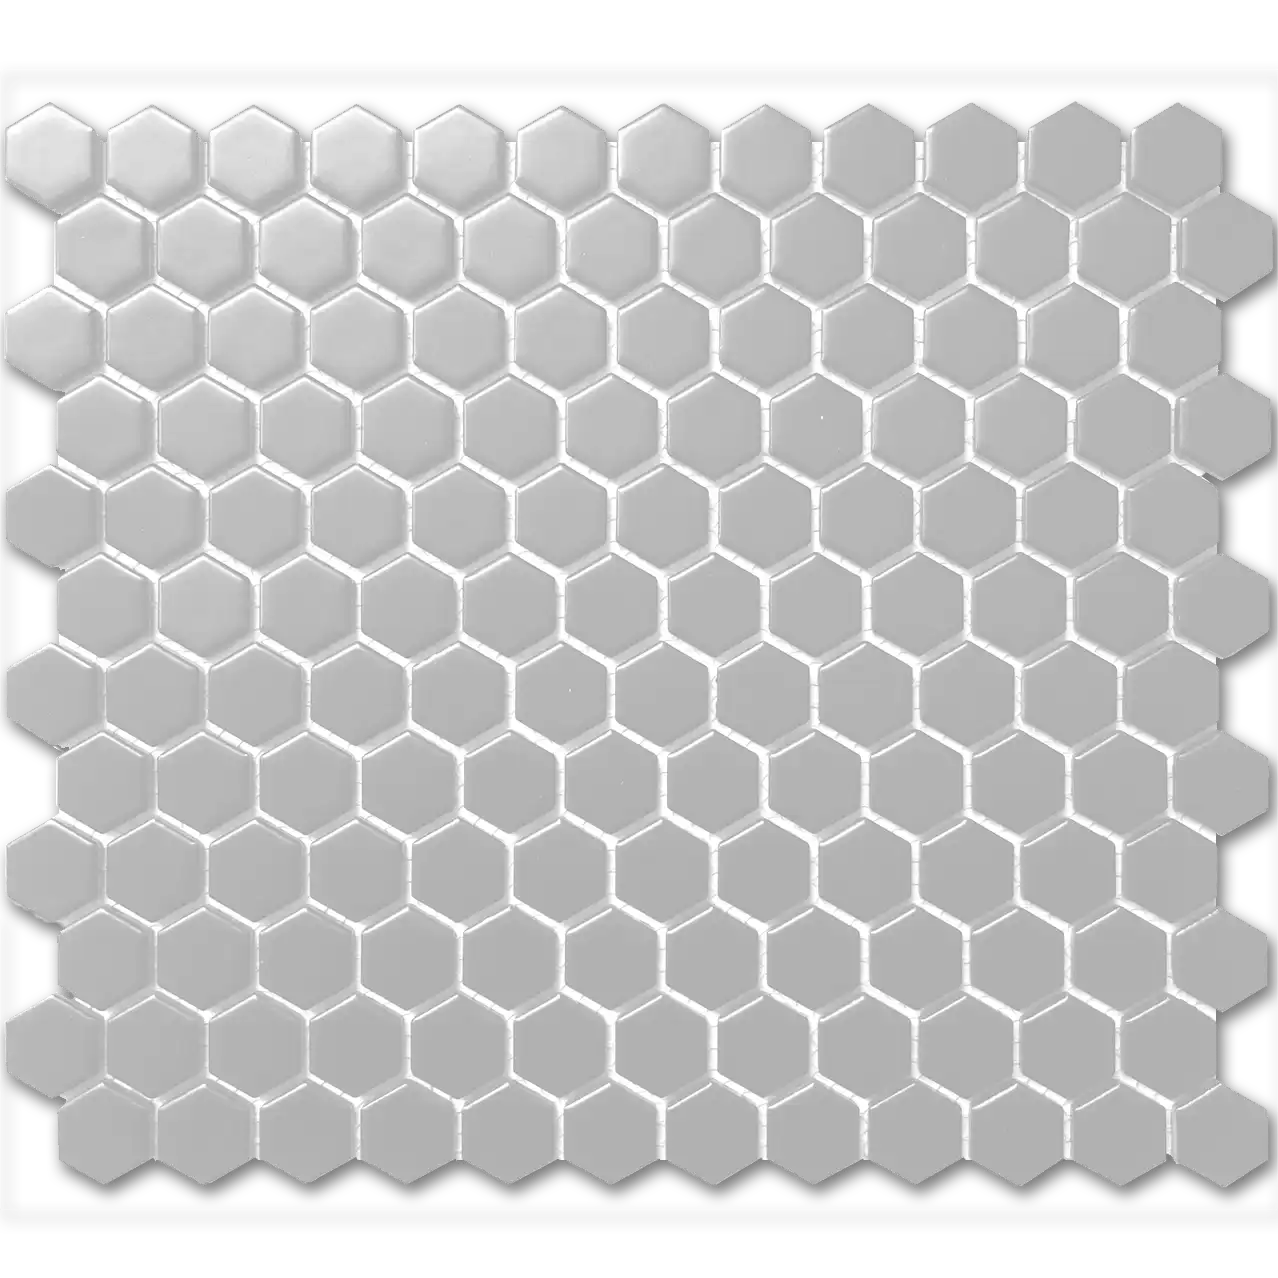 CC Mosaics 12”x12” Hexagon Glazed Porcelain Mosaic Tile 1”x1” Grey